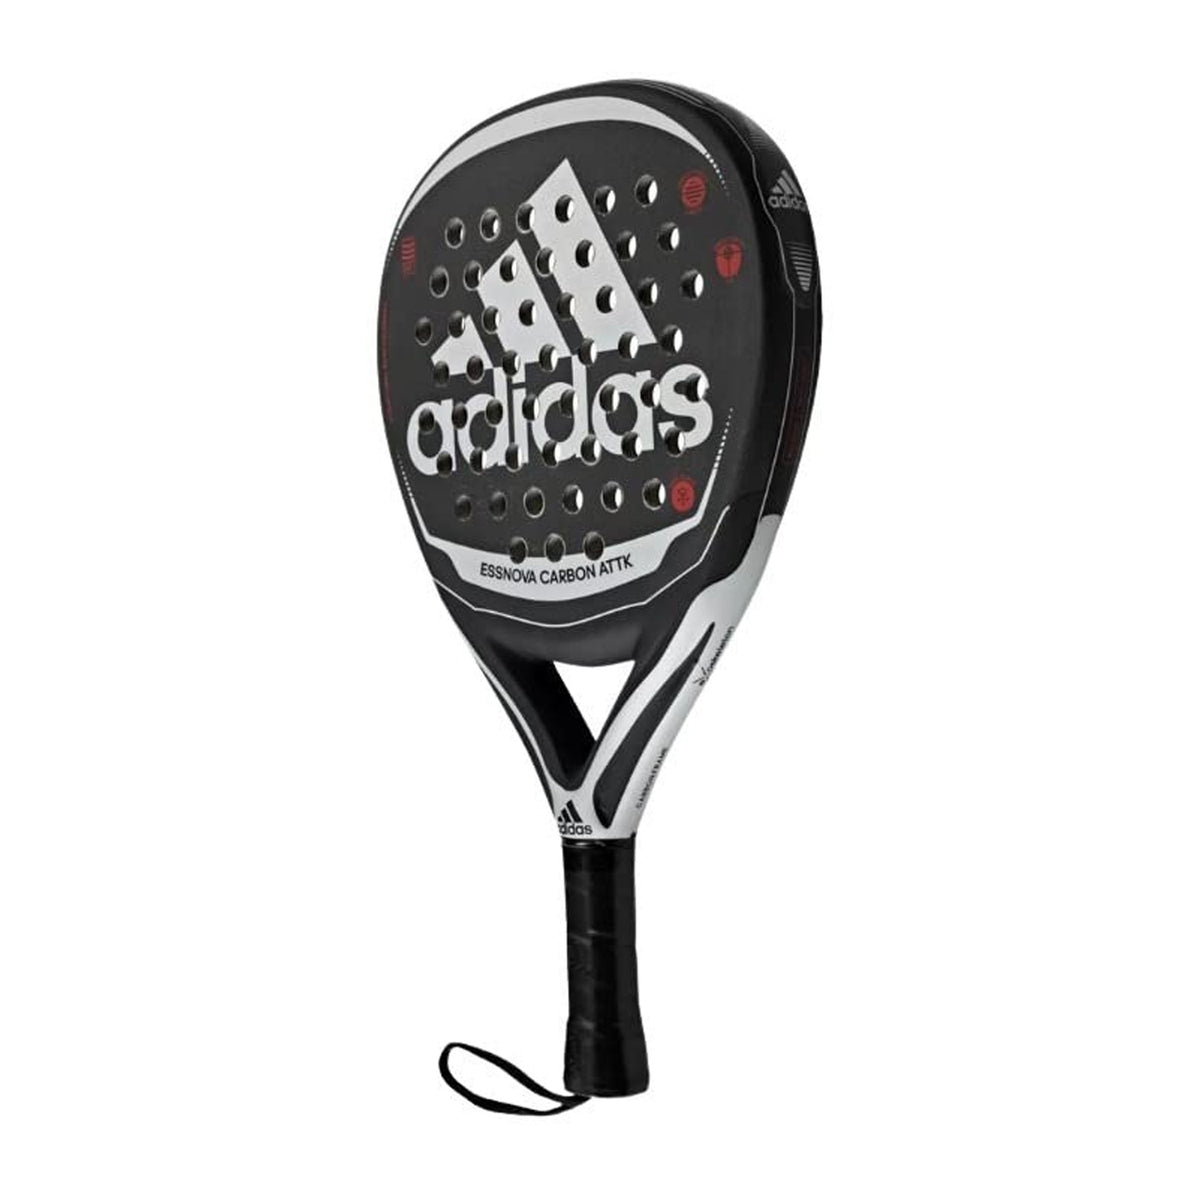 Adidas Padel Racket Essnova Carbon Attack